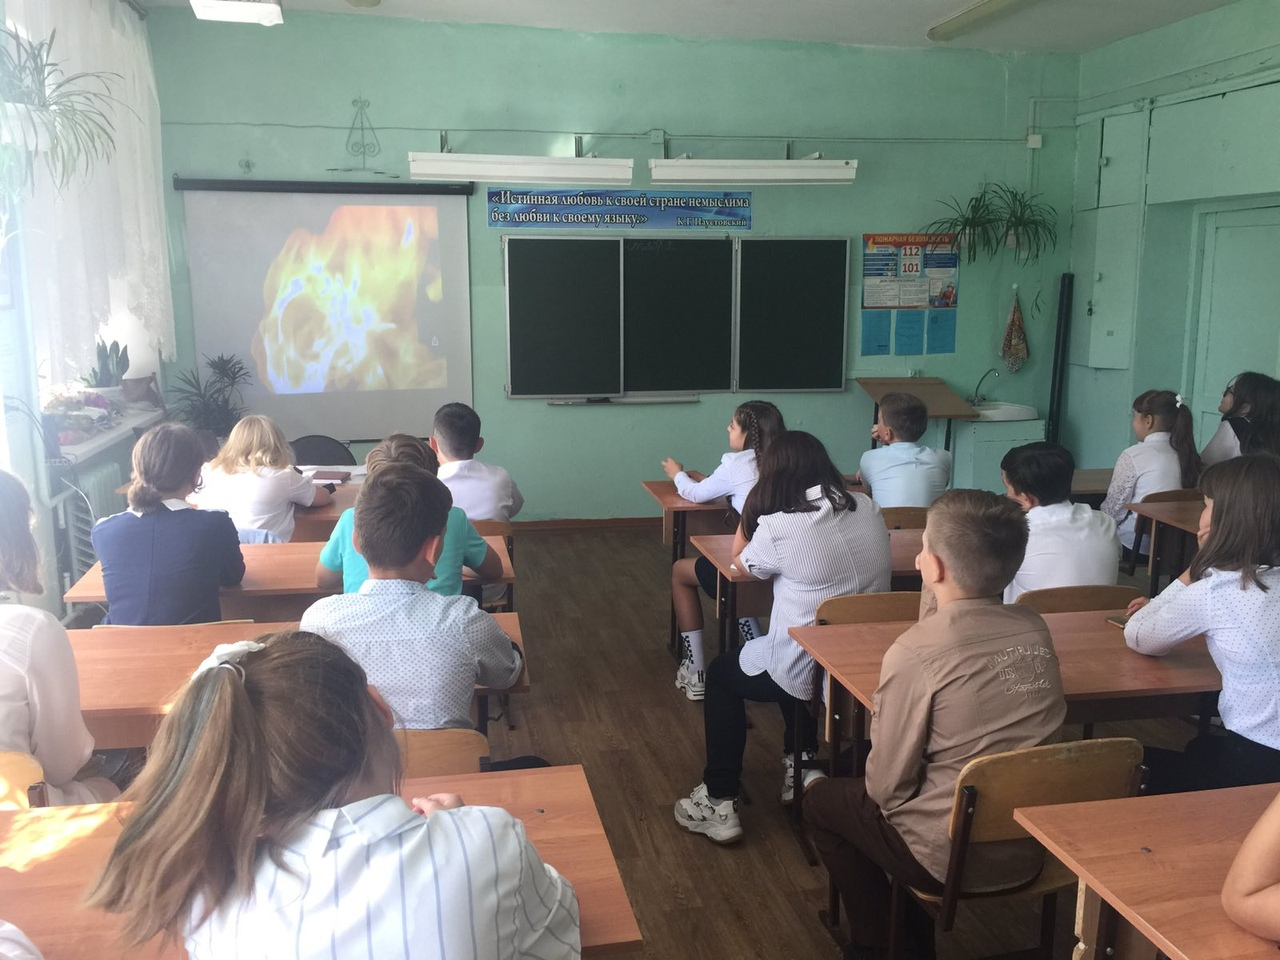 Школу в Выксе перевели на дистанционное обучение из-за вирусной инфекции